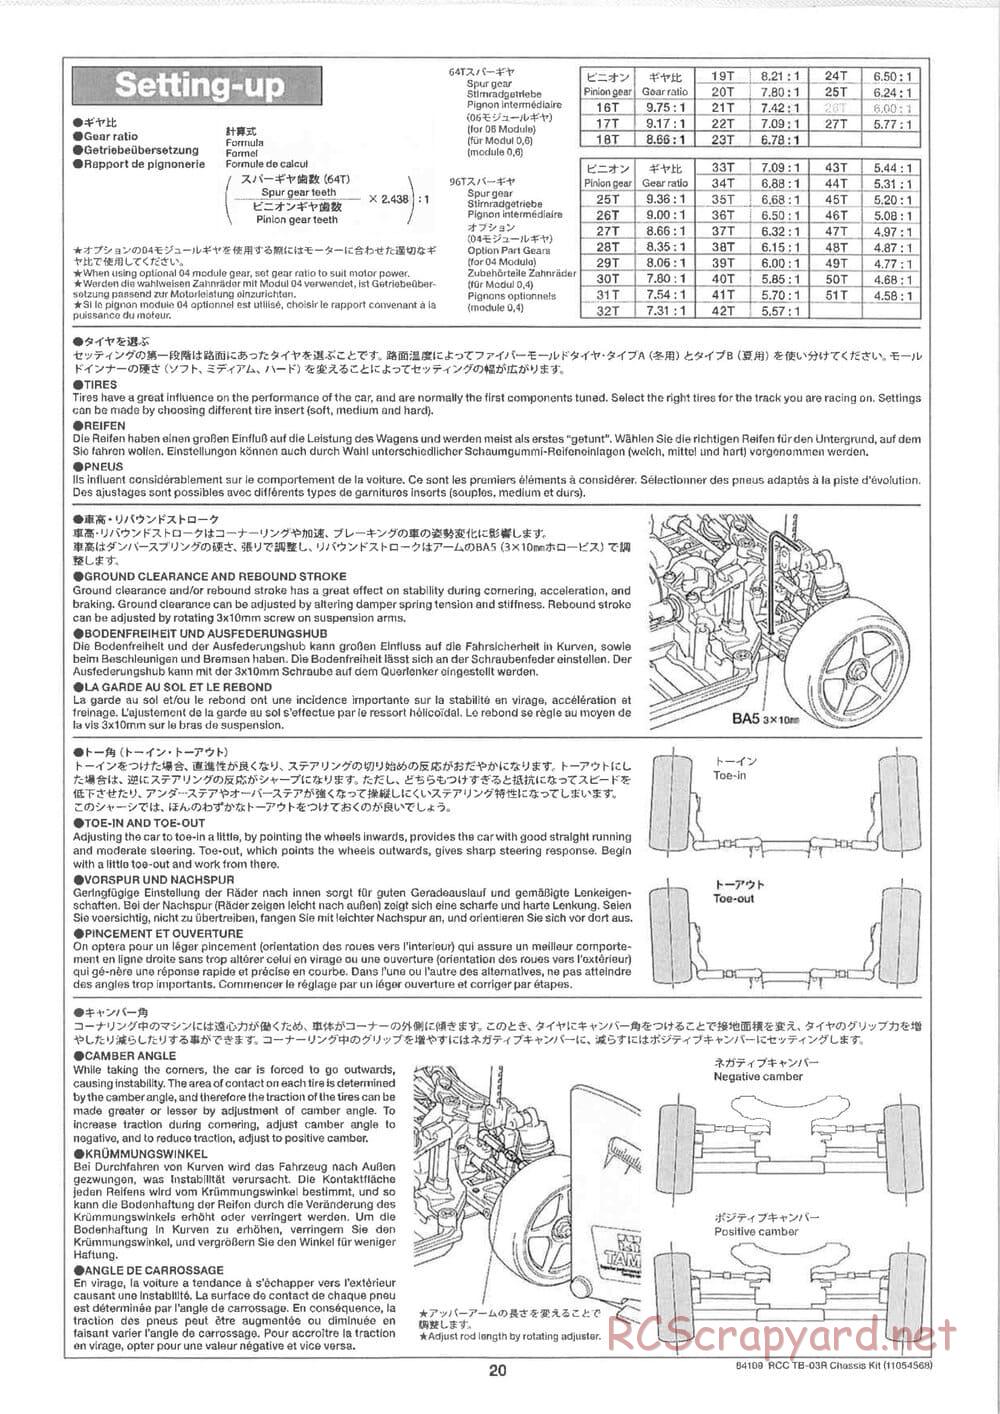 Tamiya - TB-03R Chassis - Manual - Page 20